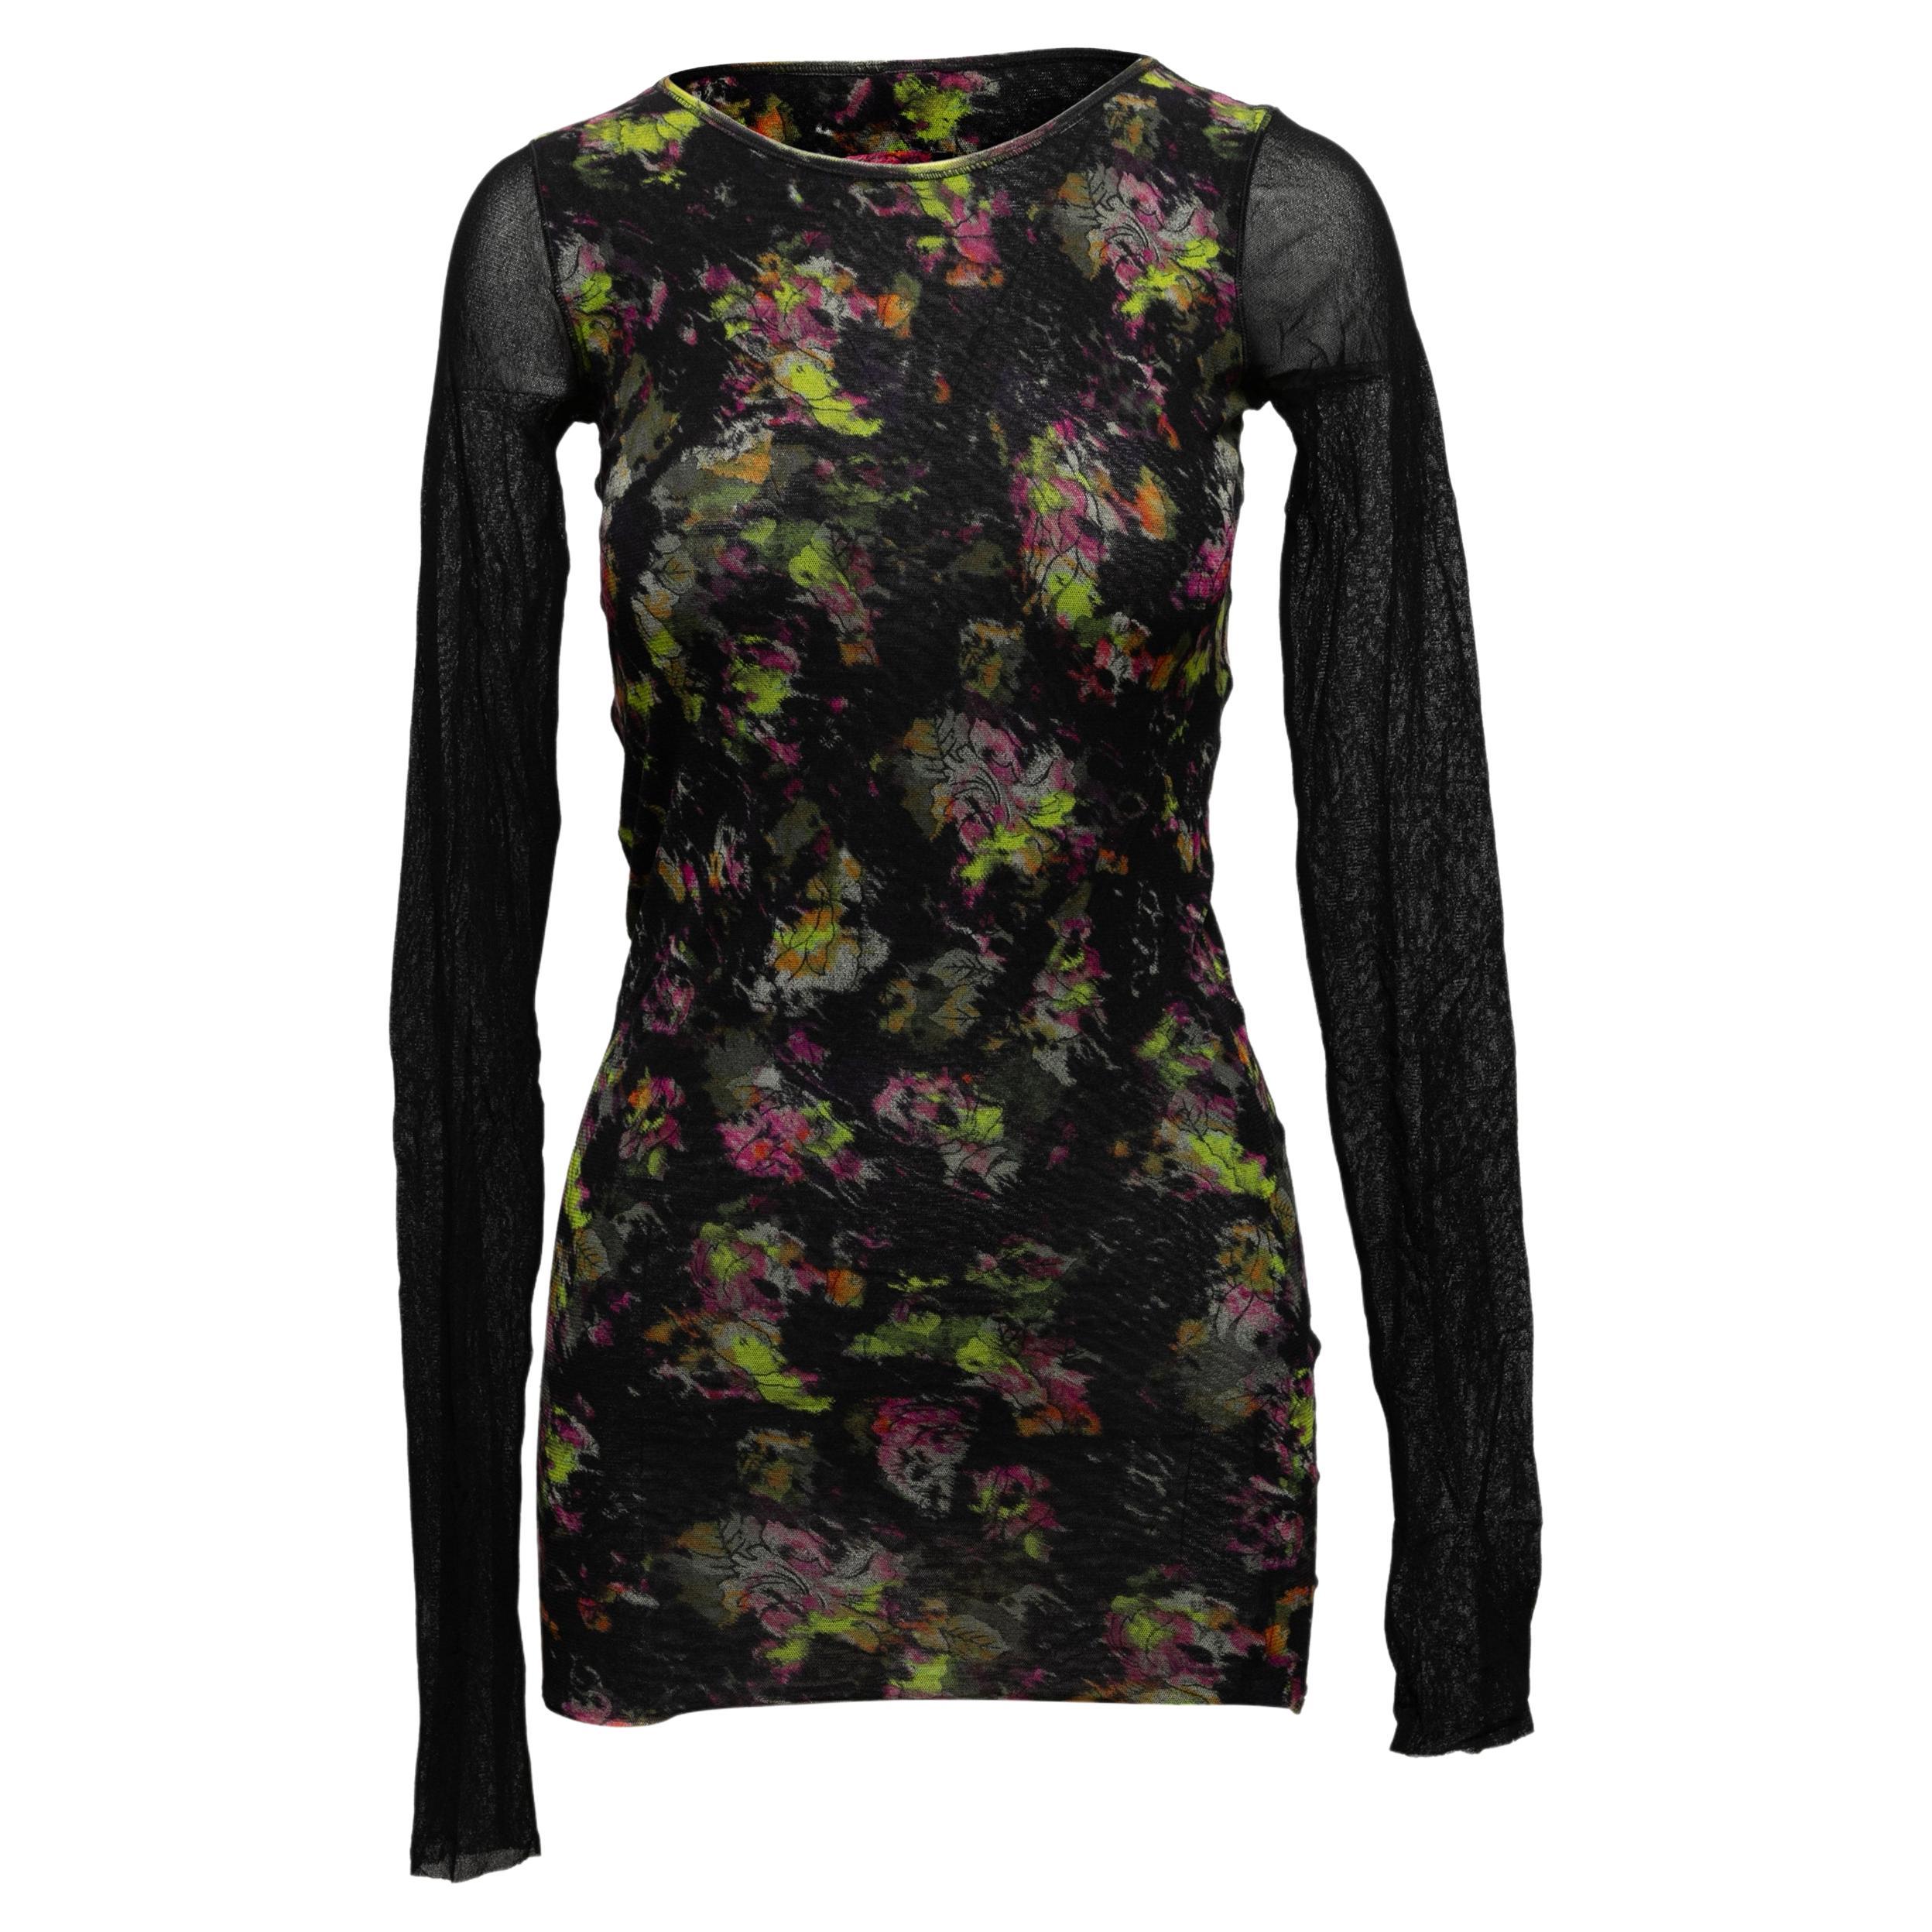 Black & Multicolor Jean Paul Gaultier Soleil Mesh Floral Print Top Size US S